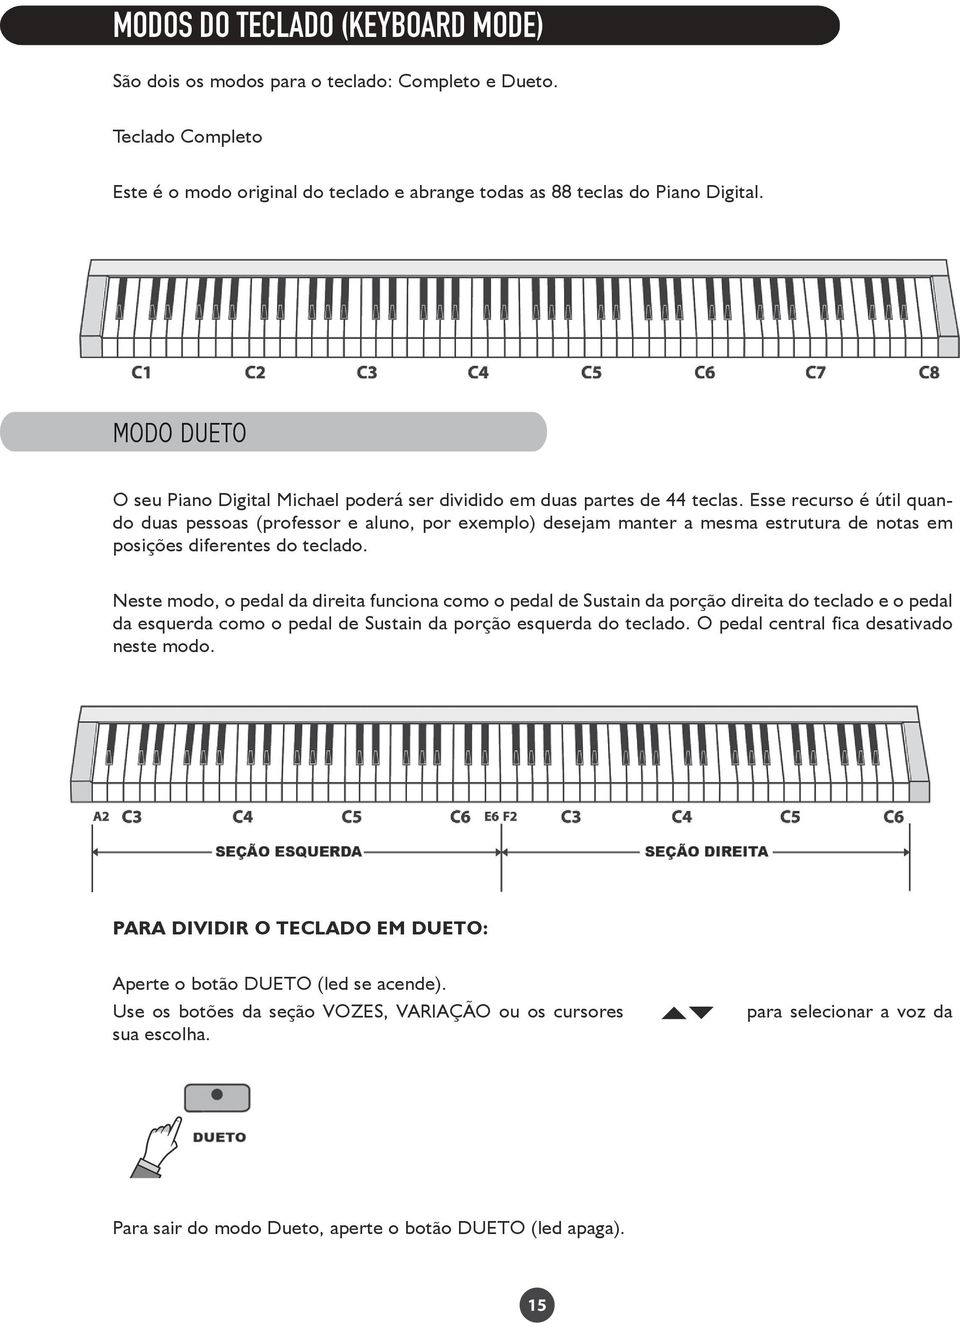 Esse recurso é útil quando duas pessoas (professor e aluno, por exemplo) desejam manter a mesma estrutura de notas em posições diferentes do teclado.